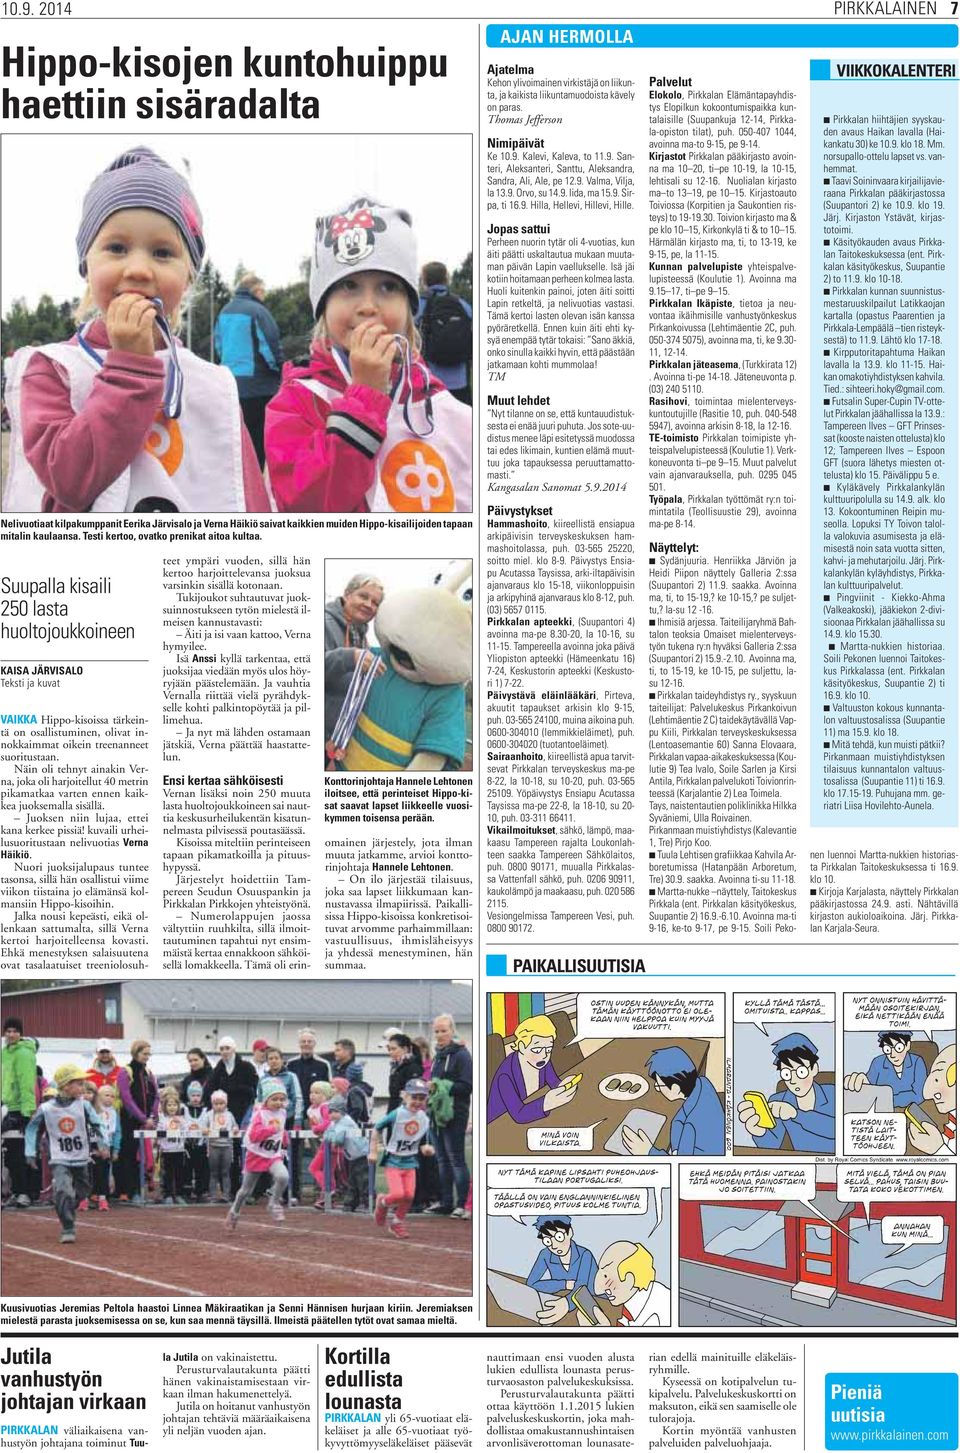 Suupalla kisaili 250 lasta huoltojoukkoineen KAISA JÄRVISALO Teksti ja kuvat VAIKKA Hippo-kisoissa tärkeintä on osallistuminen, olivat innokkaimmat oikein treenanneet suoritustaan.